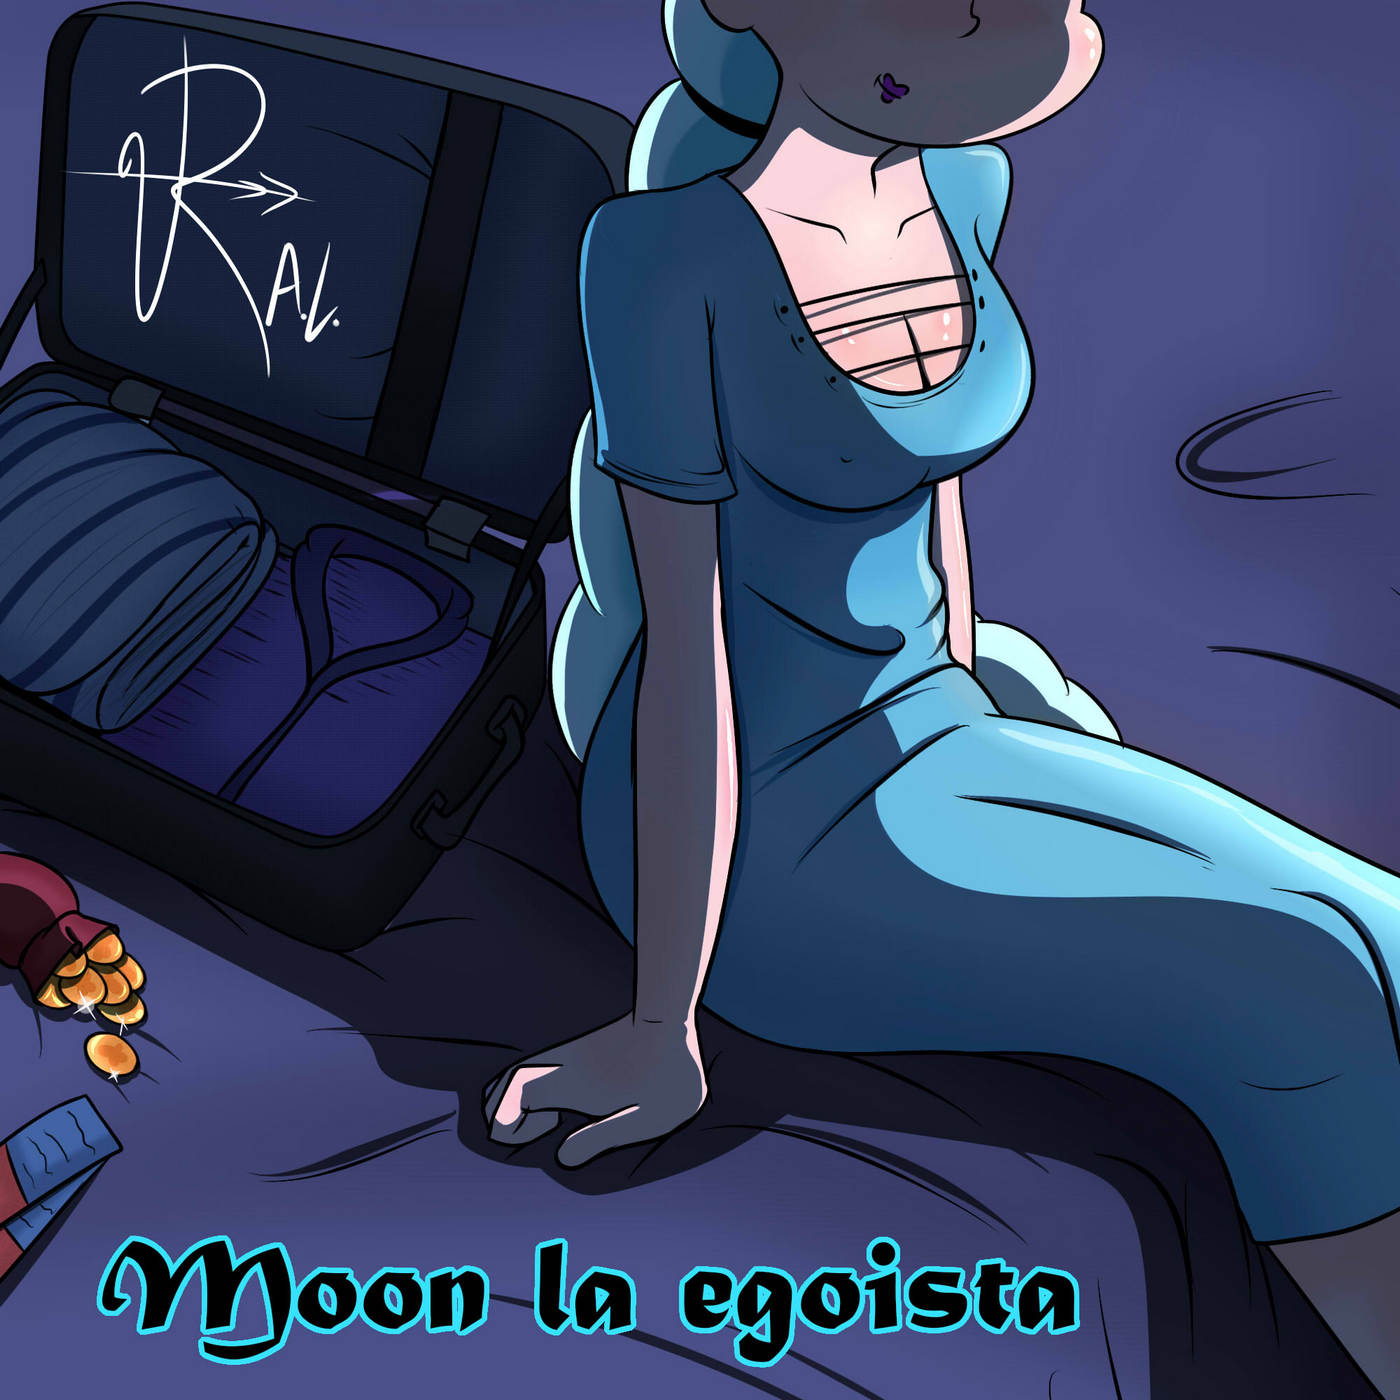 Moon la Egoista – RogueArtLove - 37e0841179374085abc459b49c3aead6